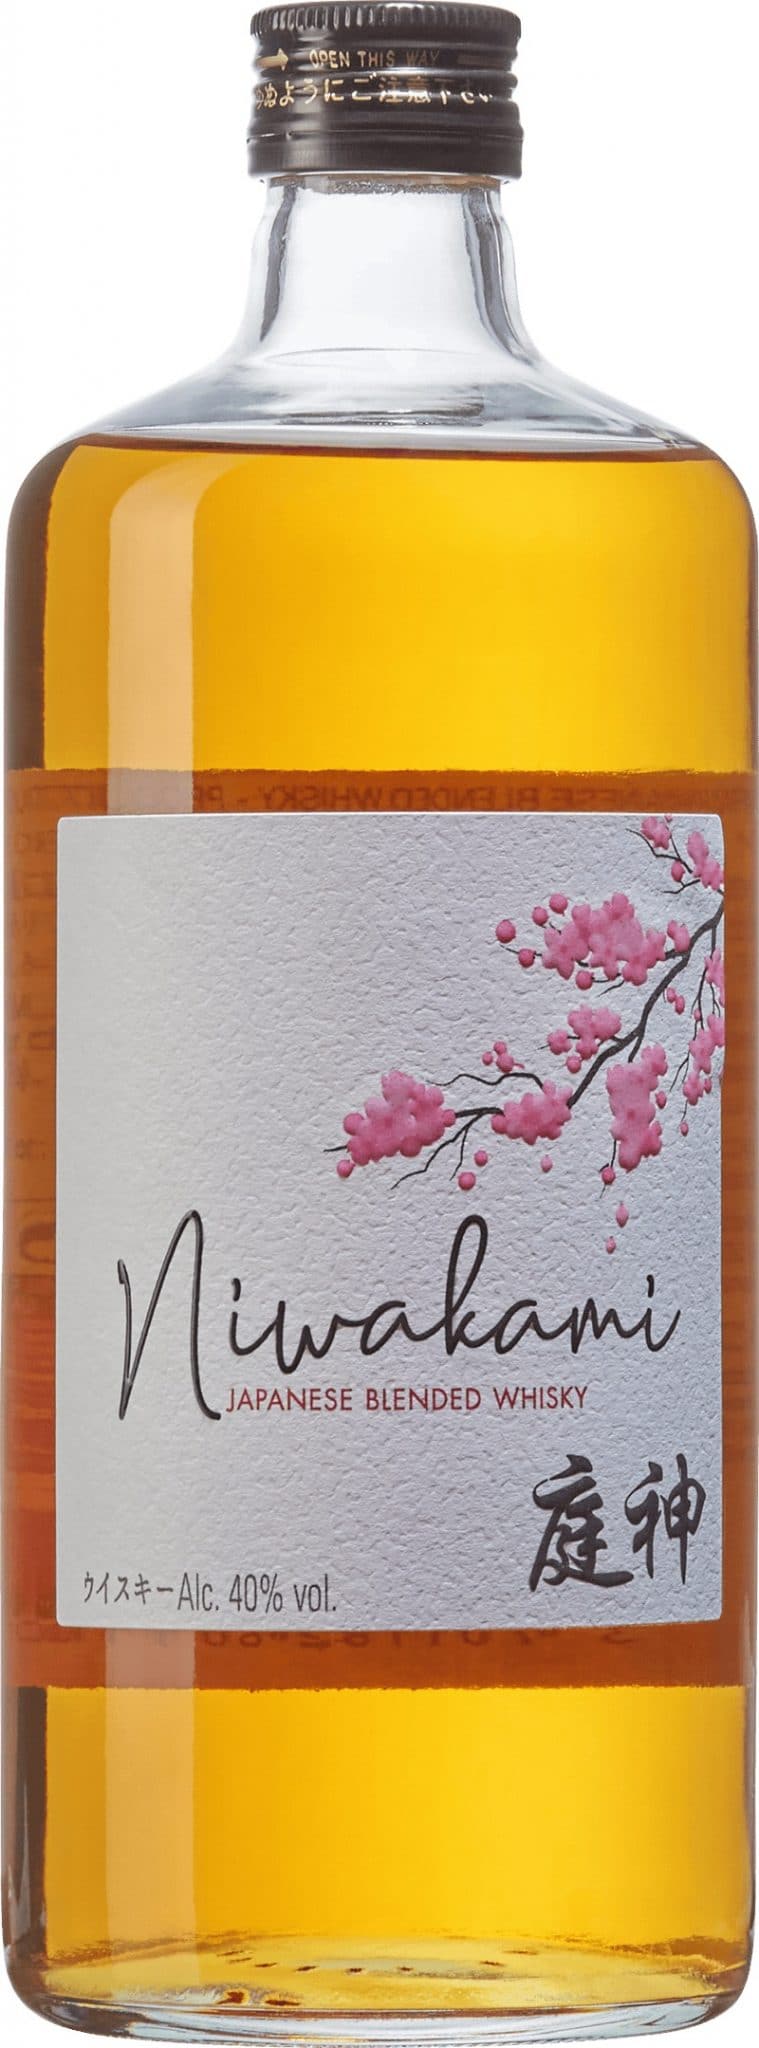 Niwakami Japanese Blended Whisky